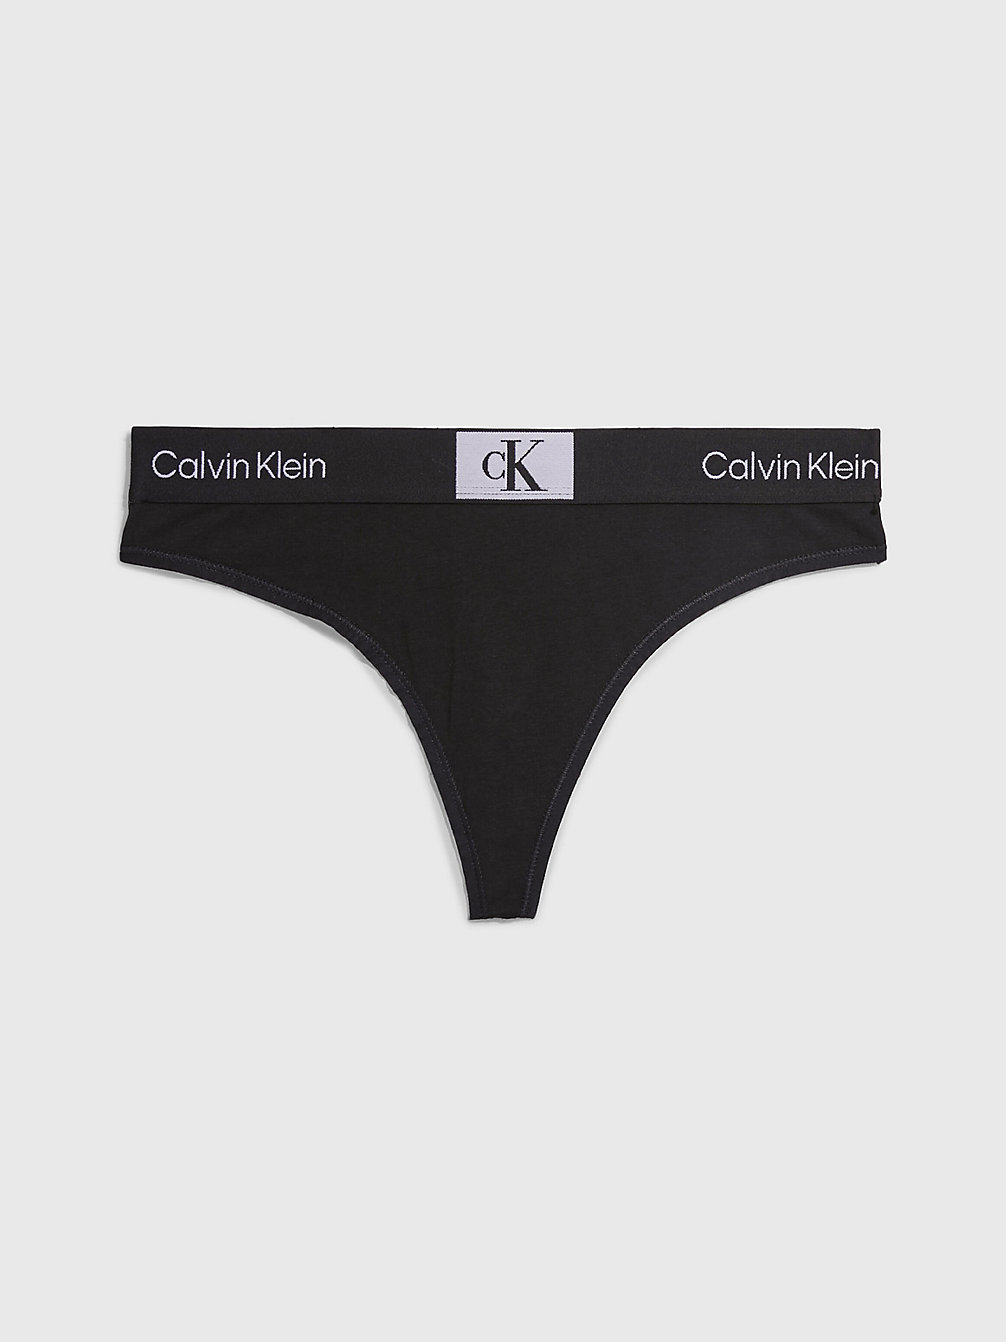 BLACK Thong - Ck96 undefined women Calvin Klein